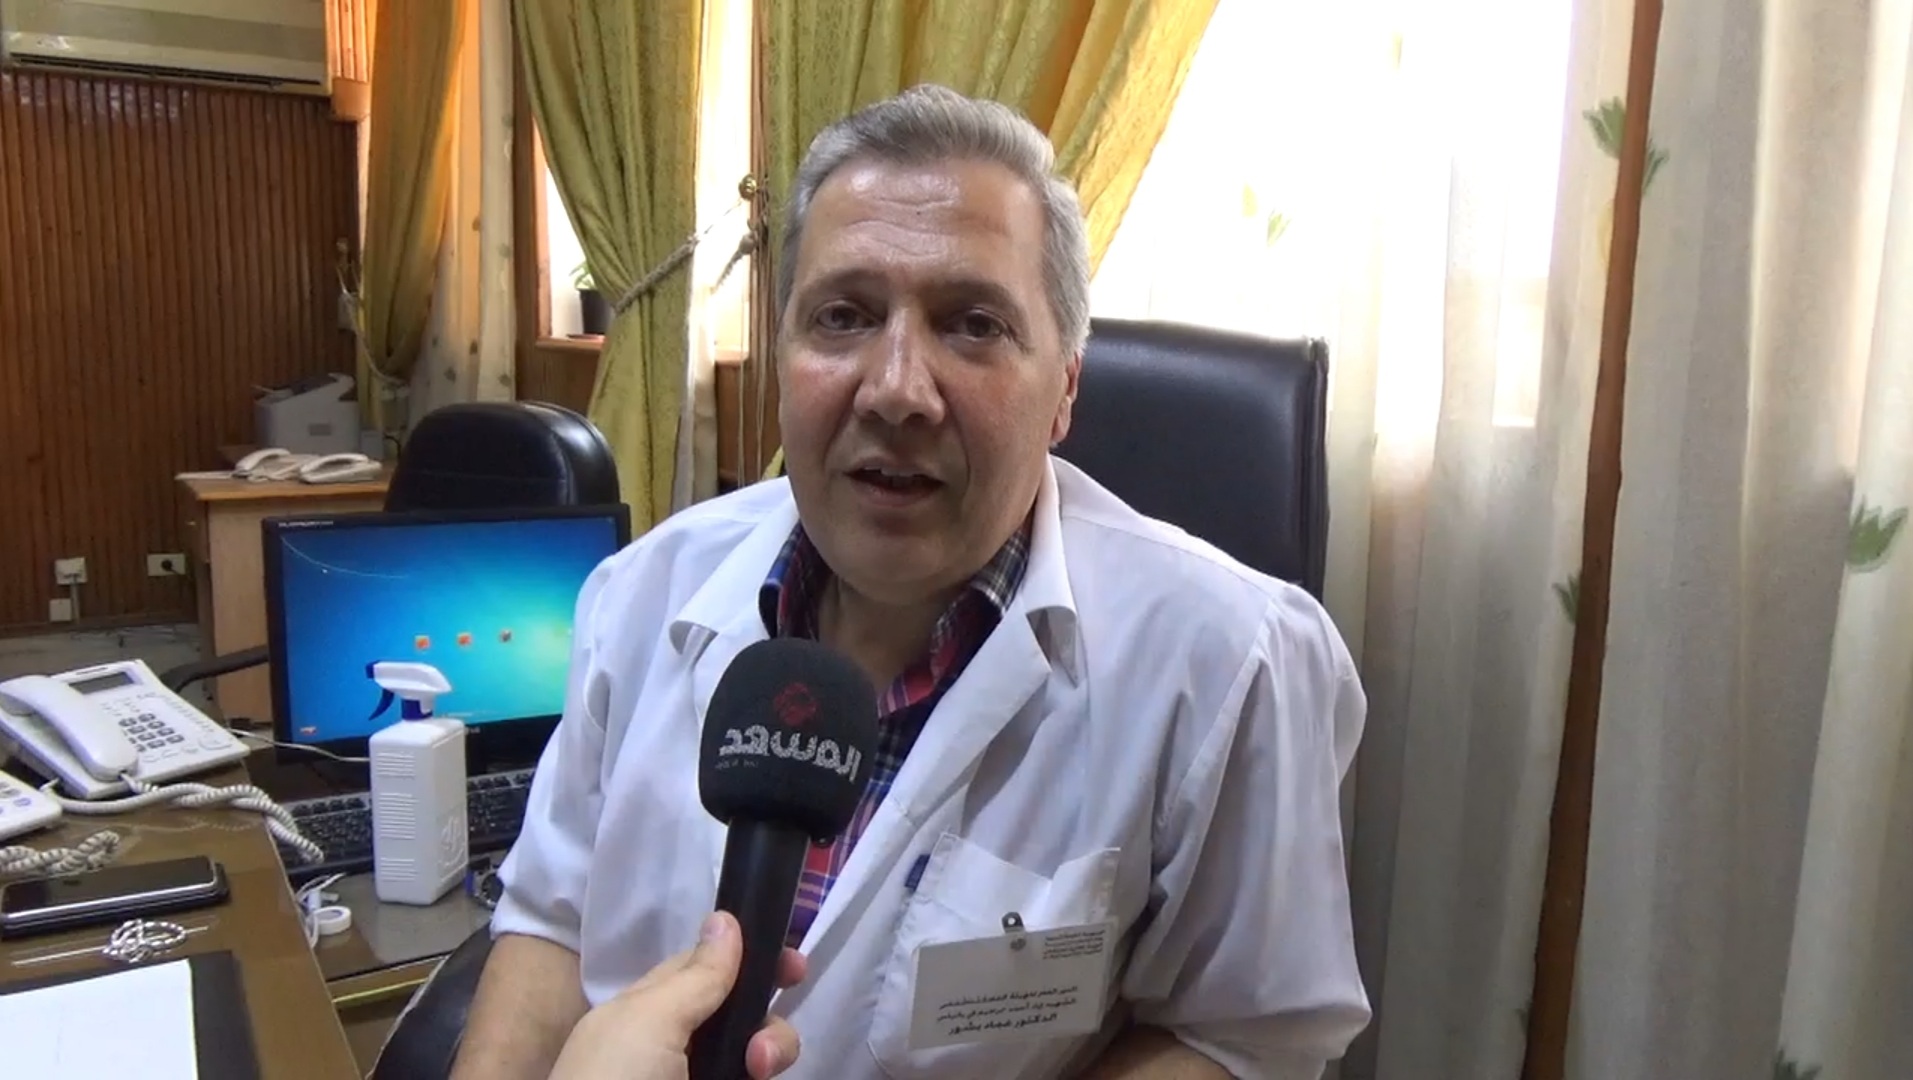 مدير مستشفى بانياس لـ"المشهد" : مستشفى مُصغّر بالخدمة وقاعة ترفيهية للأطفال قيد التجهيز (فيديو)